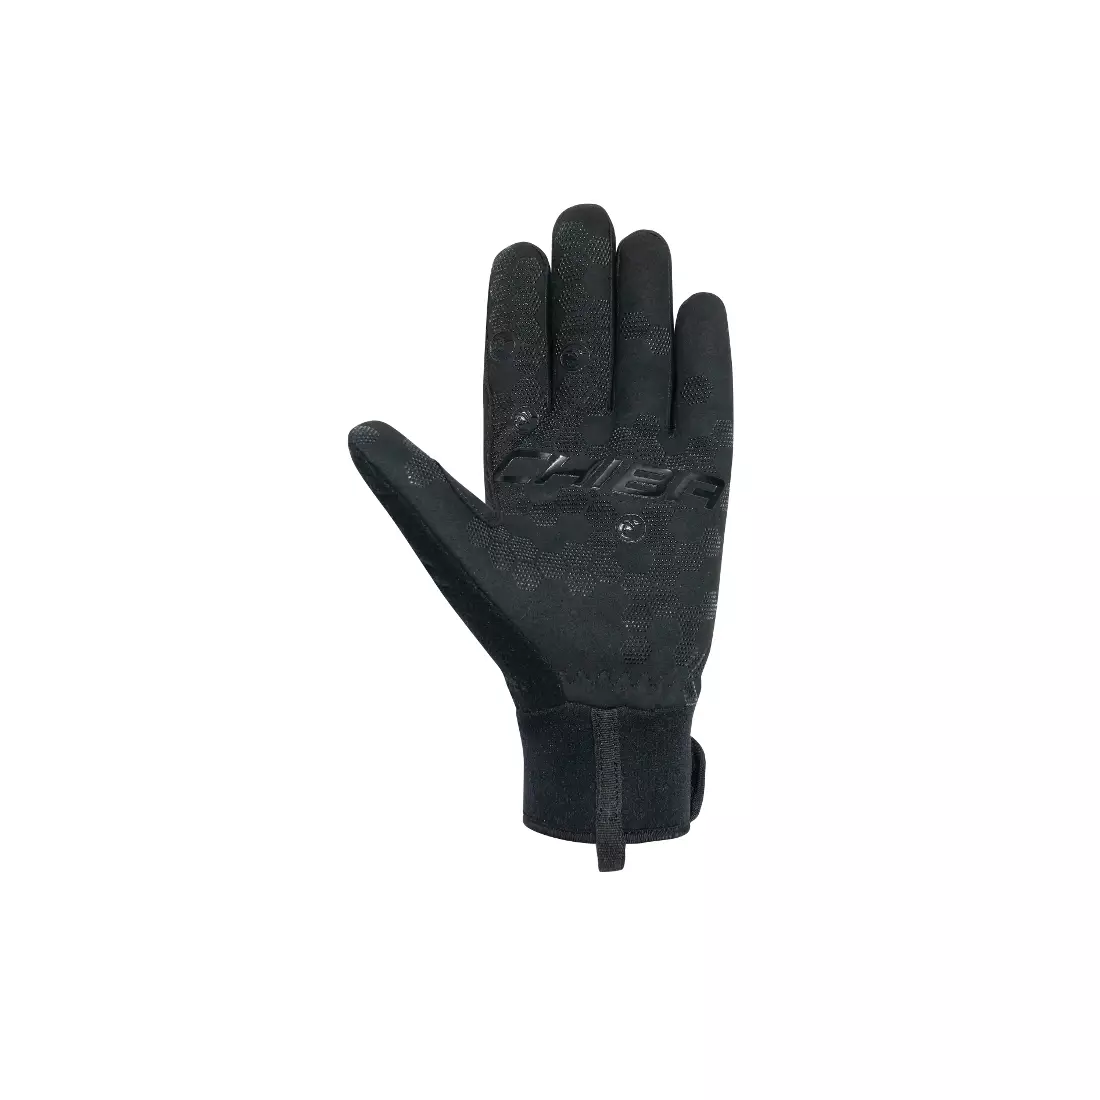 Mănuși de iarnă pentru ciclism CHIBA CLASSIC, negre 31528